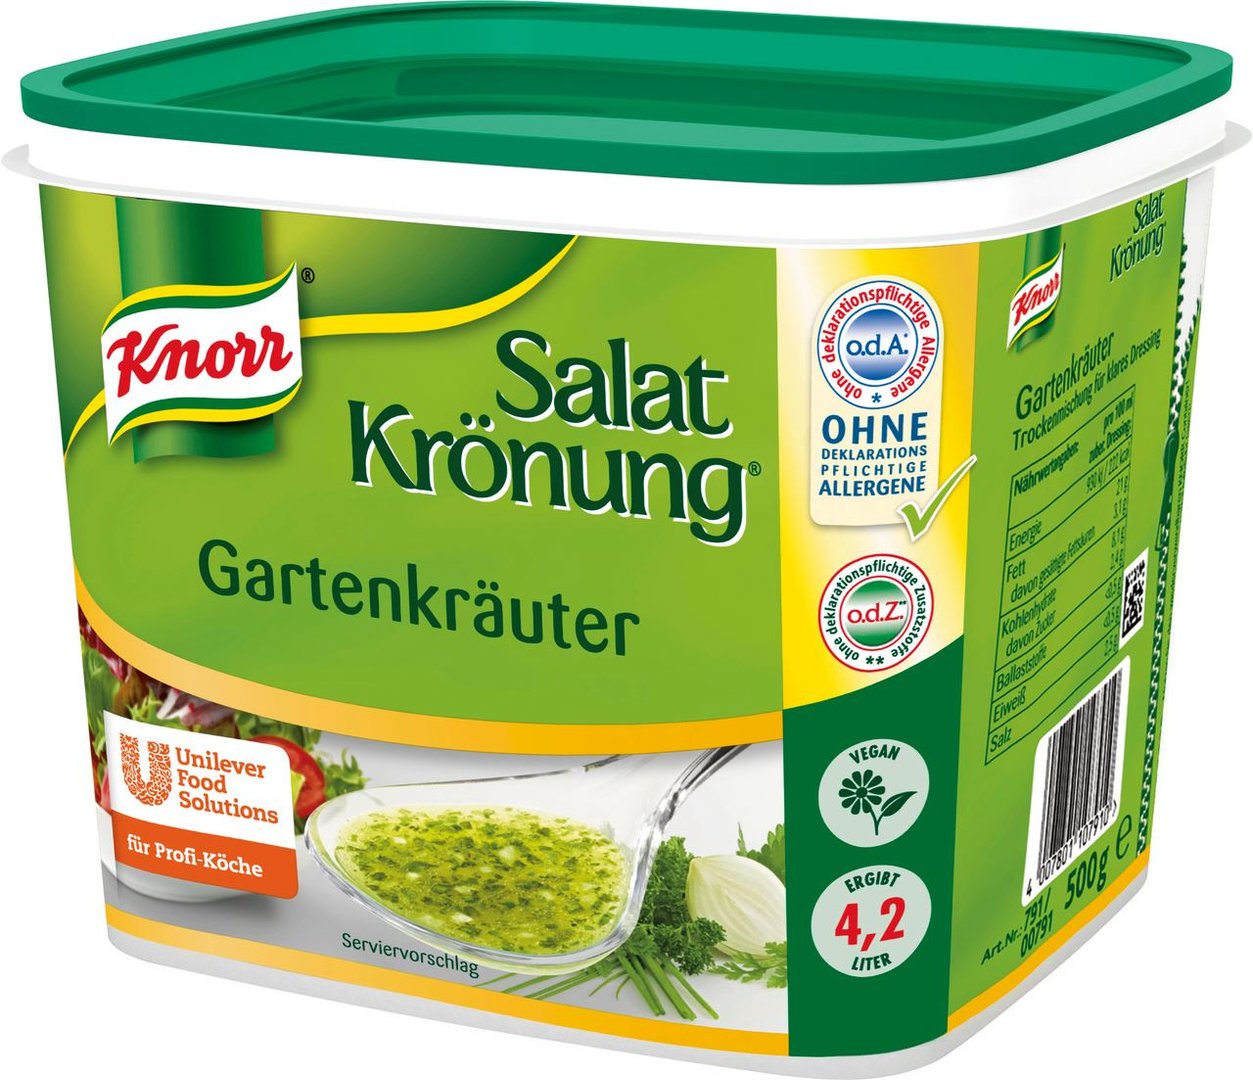 Knorr - Salat Krönung Gartenkräuter 500 g Dose